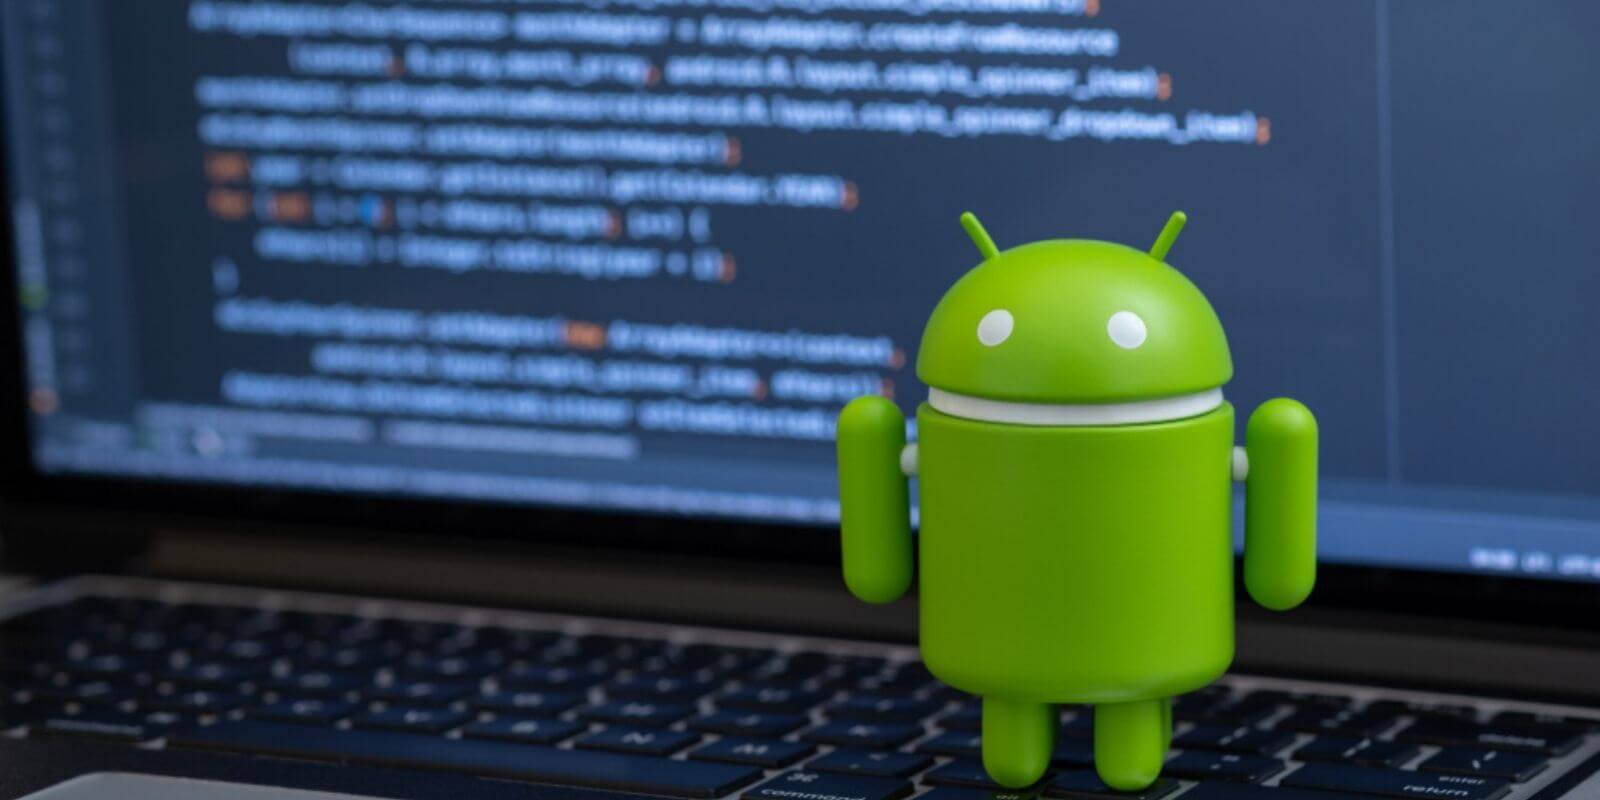 Android : une vulnérabilité met en danger les wallets cryptos